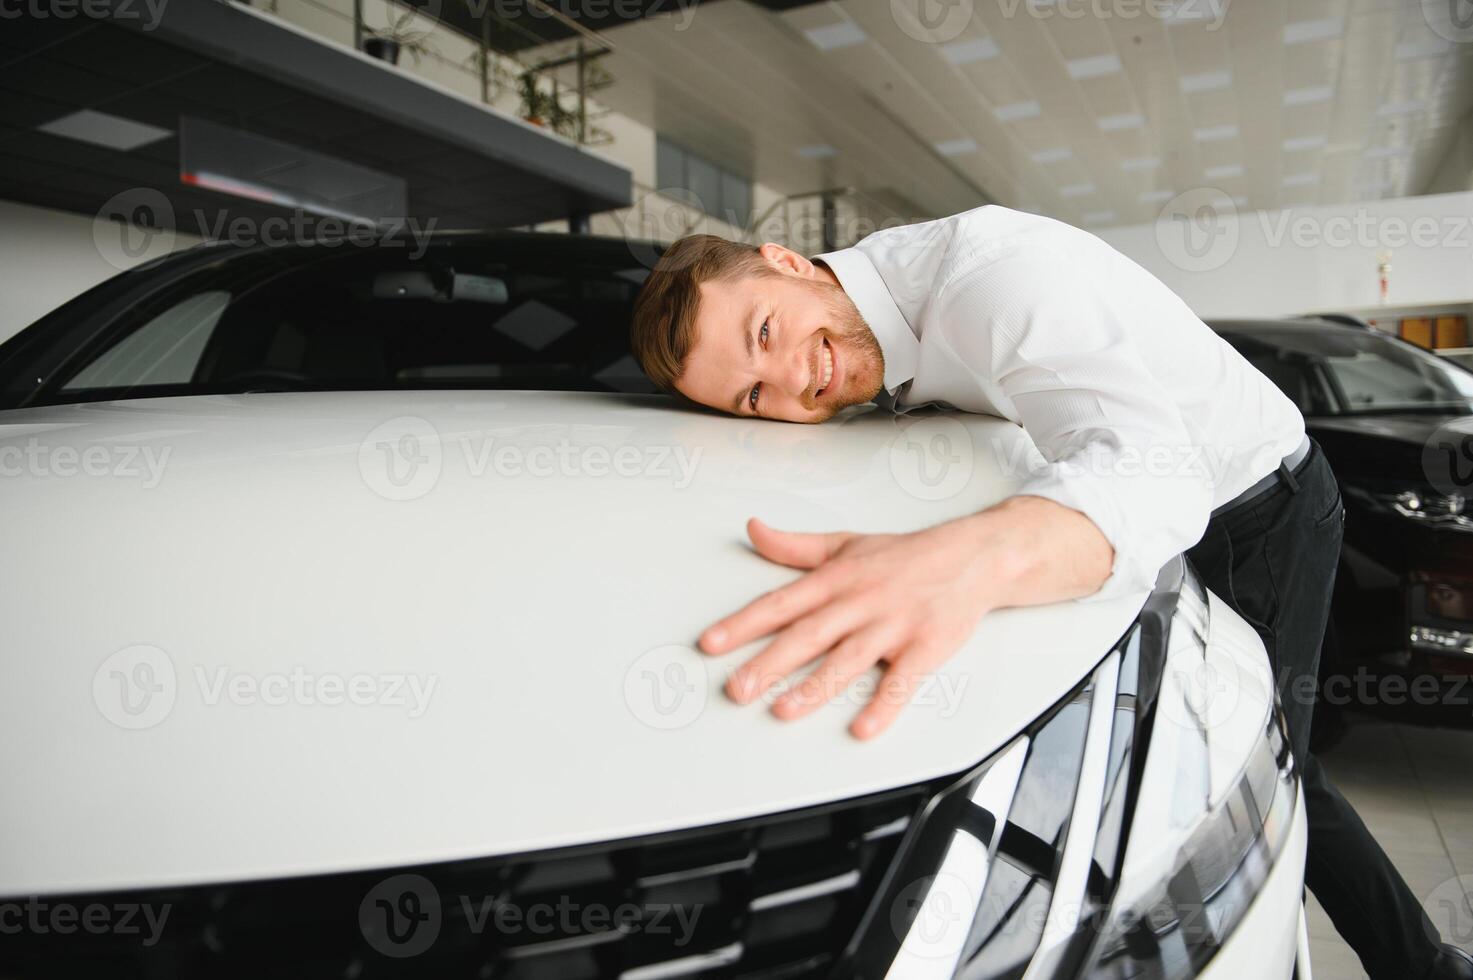 contento hermoso barbado hombre comprando un coche en concesión, chico abrazando capucha de nuevo coche foto